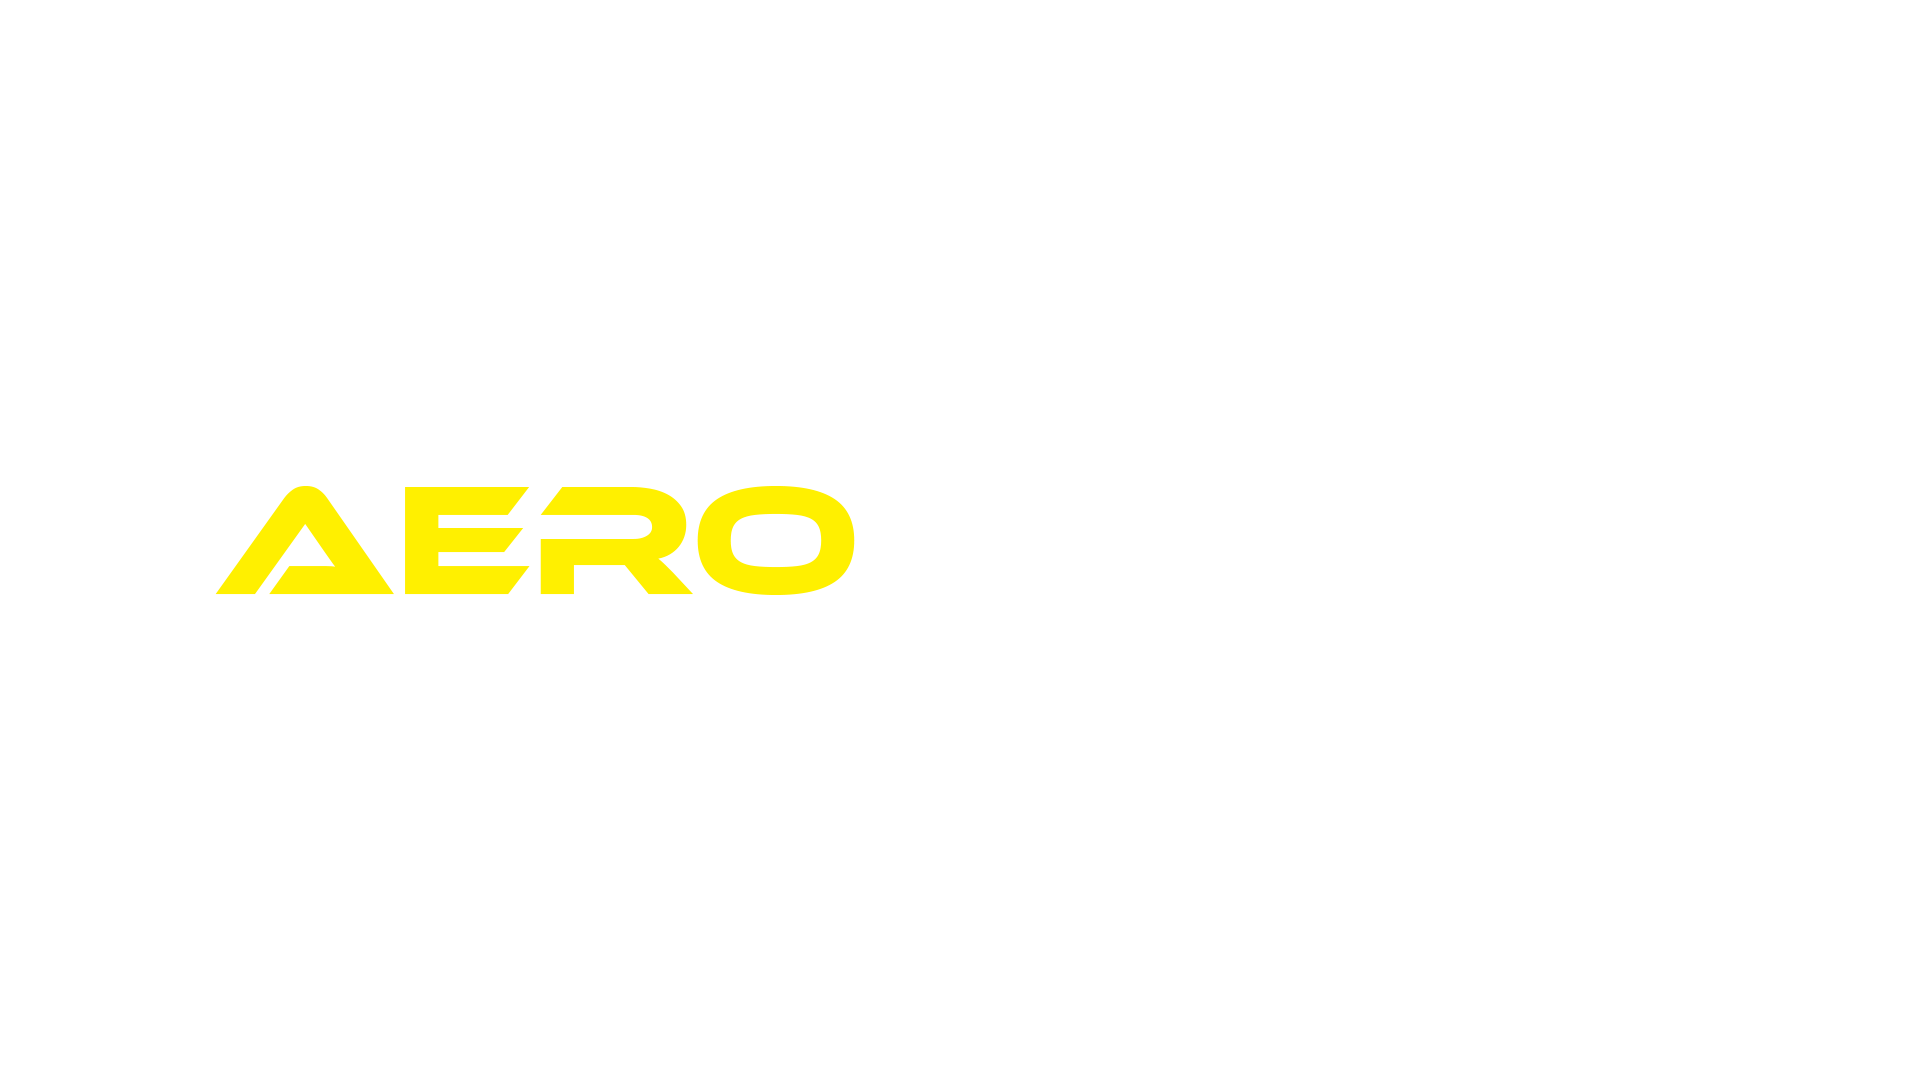 File:Aerokinetix-tran.png